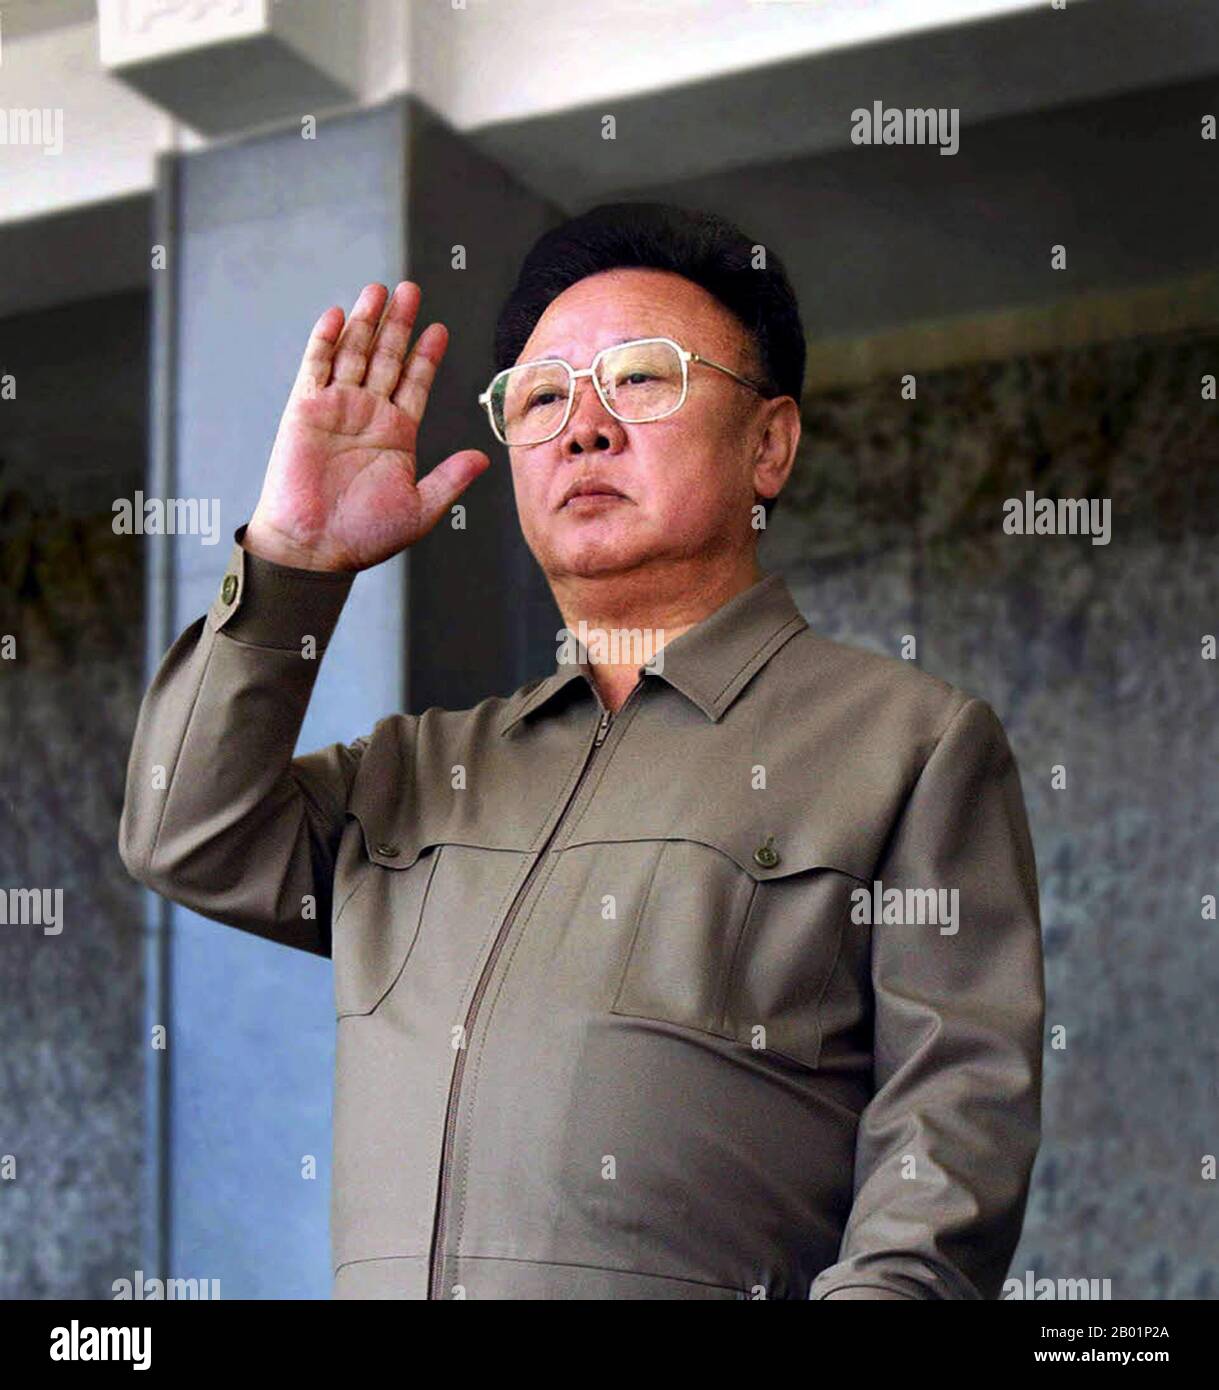 Corea: Leader nordcoreano Kim Jong il (16 febbraio 1941/1942 - 17 dicembre 2011), Pyongyang, c. 2000. Kim Jong-il è stato il leader supremo della Corea del Nord (RPDC) dal 1994 al 2011. Succedette a suo padre e fondatore della RPDC Kim il-sung dopo la morte del vecchio Kim nel 1994. Kim Jong-il era il segretario generale del Partito dei lavoratori di Corea, presidente della Commissione nazionale di difesa della Corea del Nord e il comandante supremo dell'esercito popolare coreano, il quarto esercito permanente più grande del mondo. Foto Stock